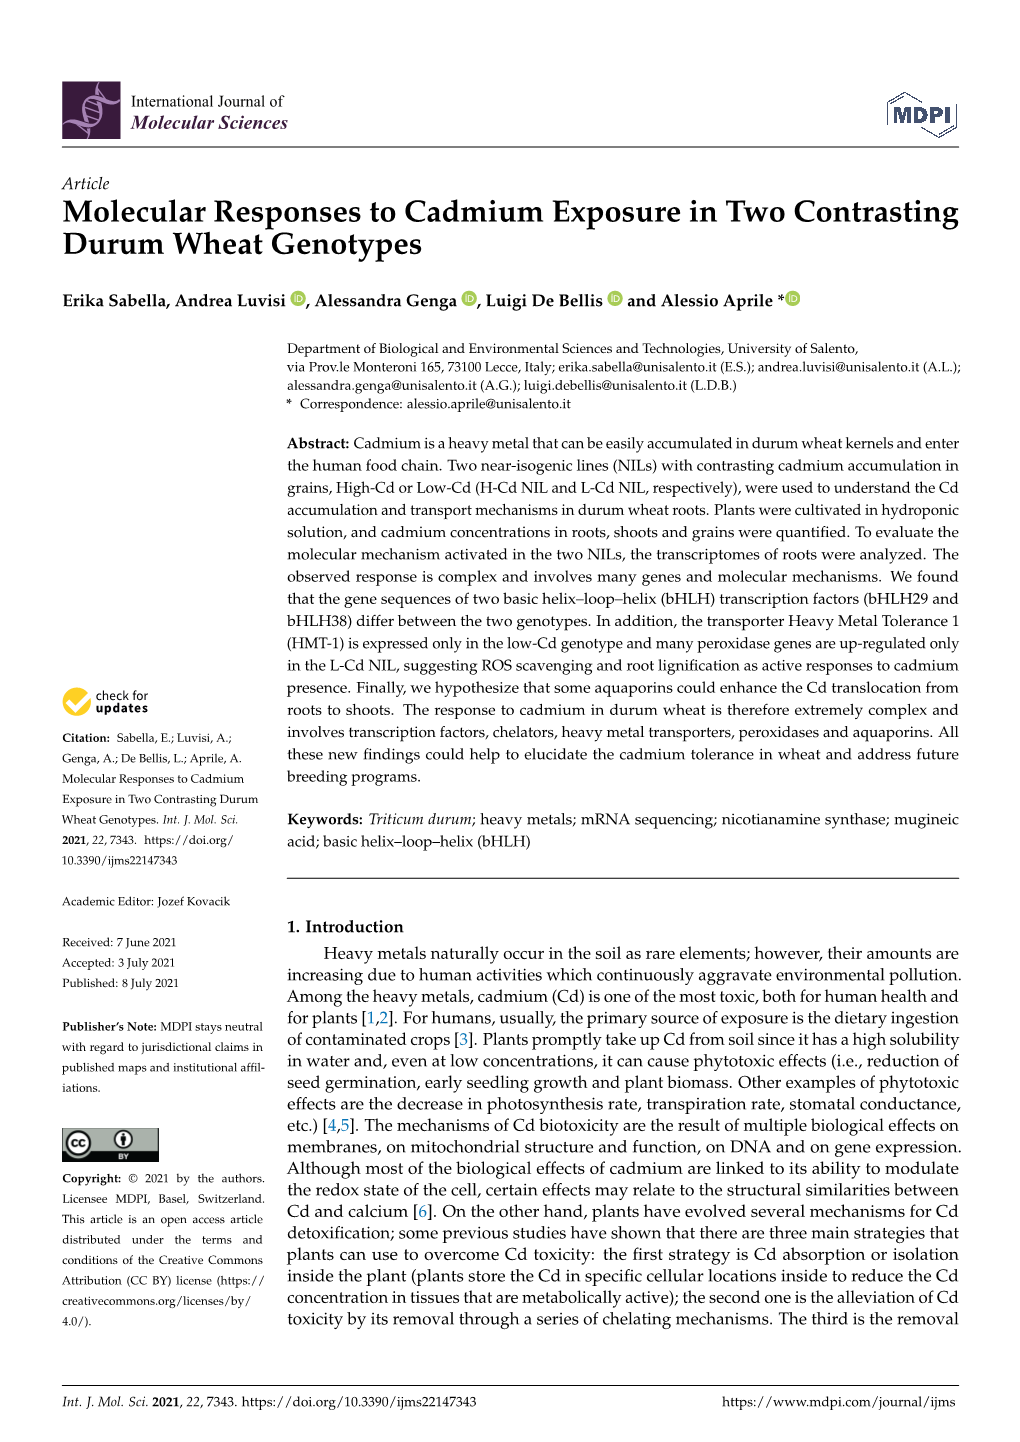 Molecular Responses to Cadmium Exposure in Two Contrasting Durum Wheat Genotypes